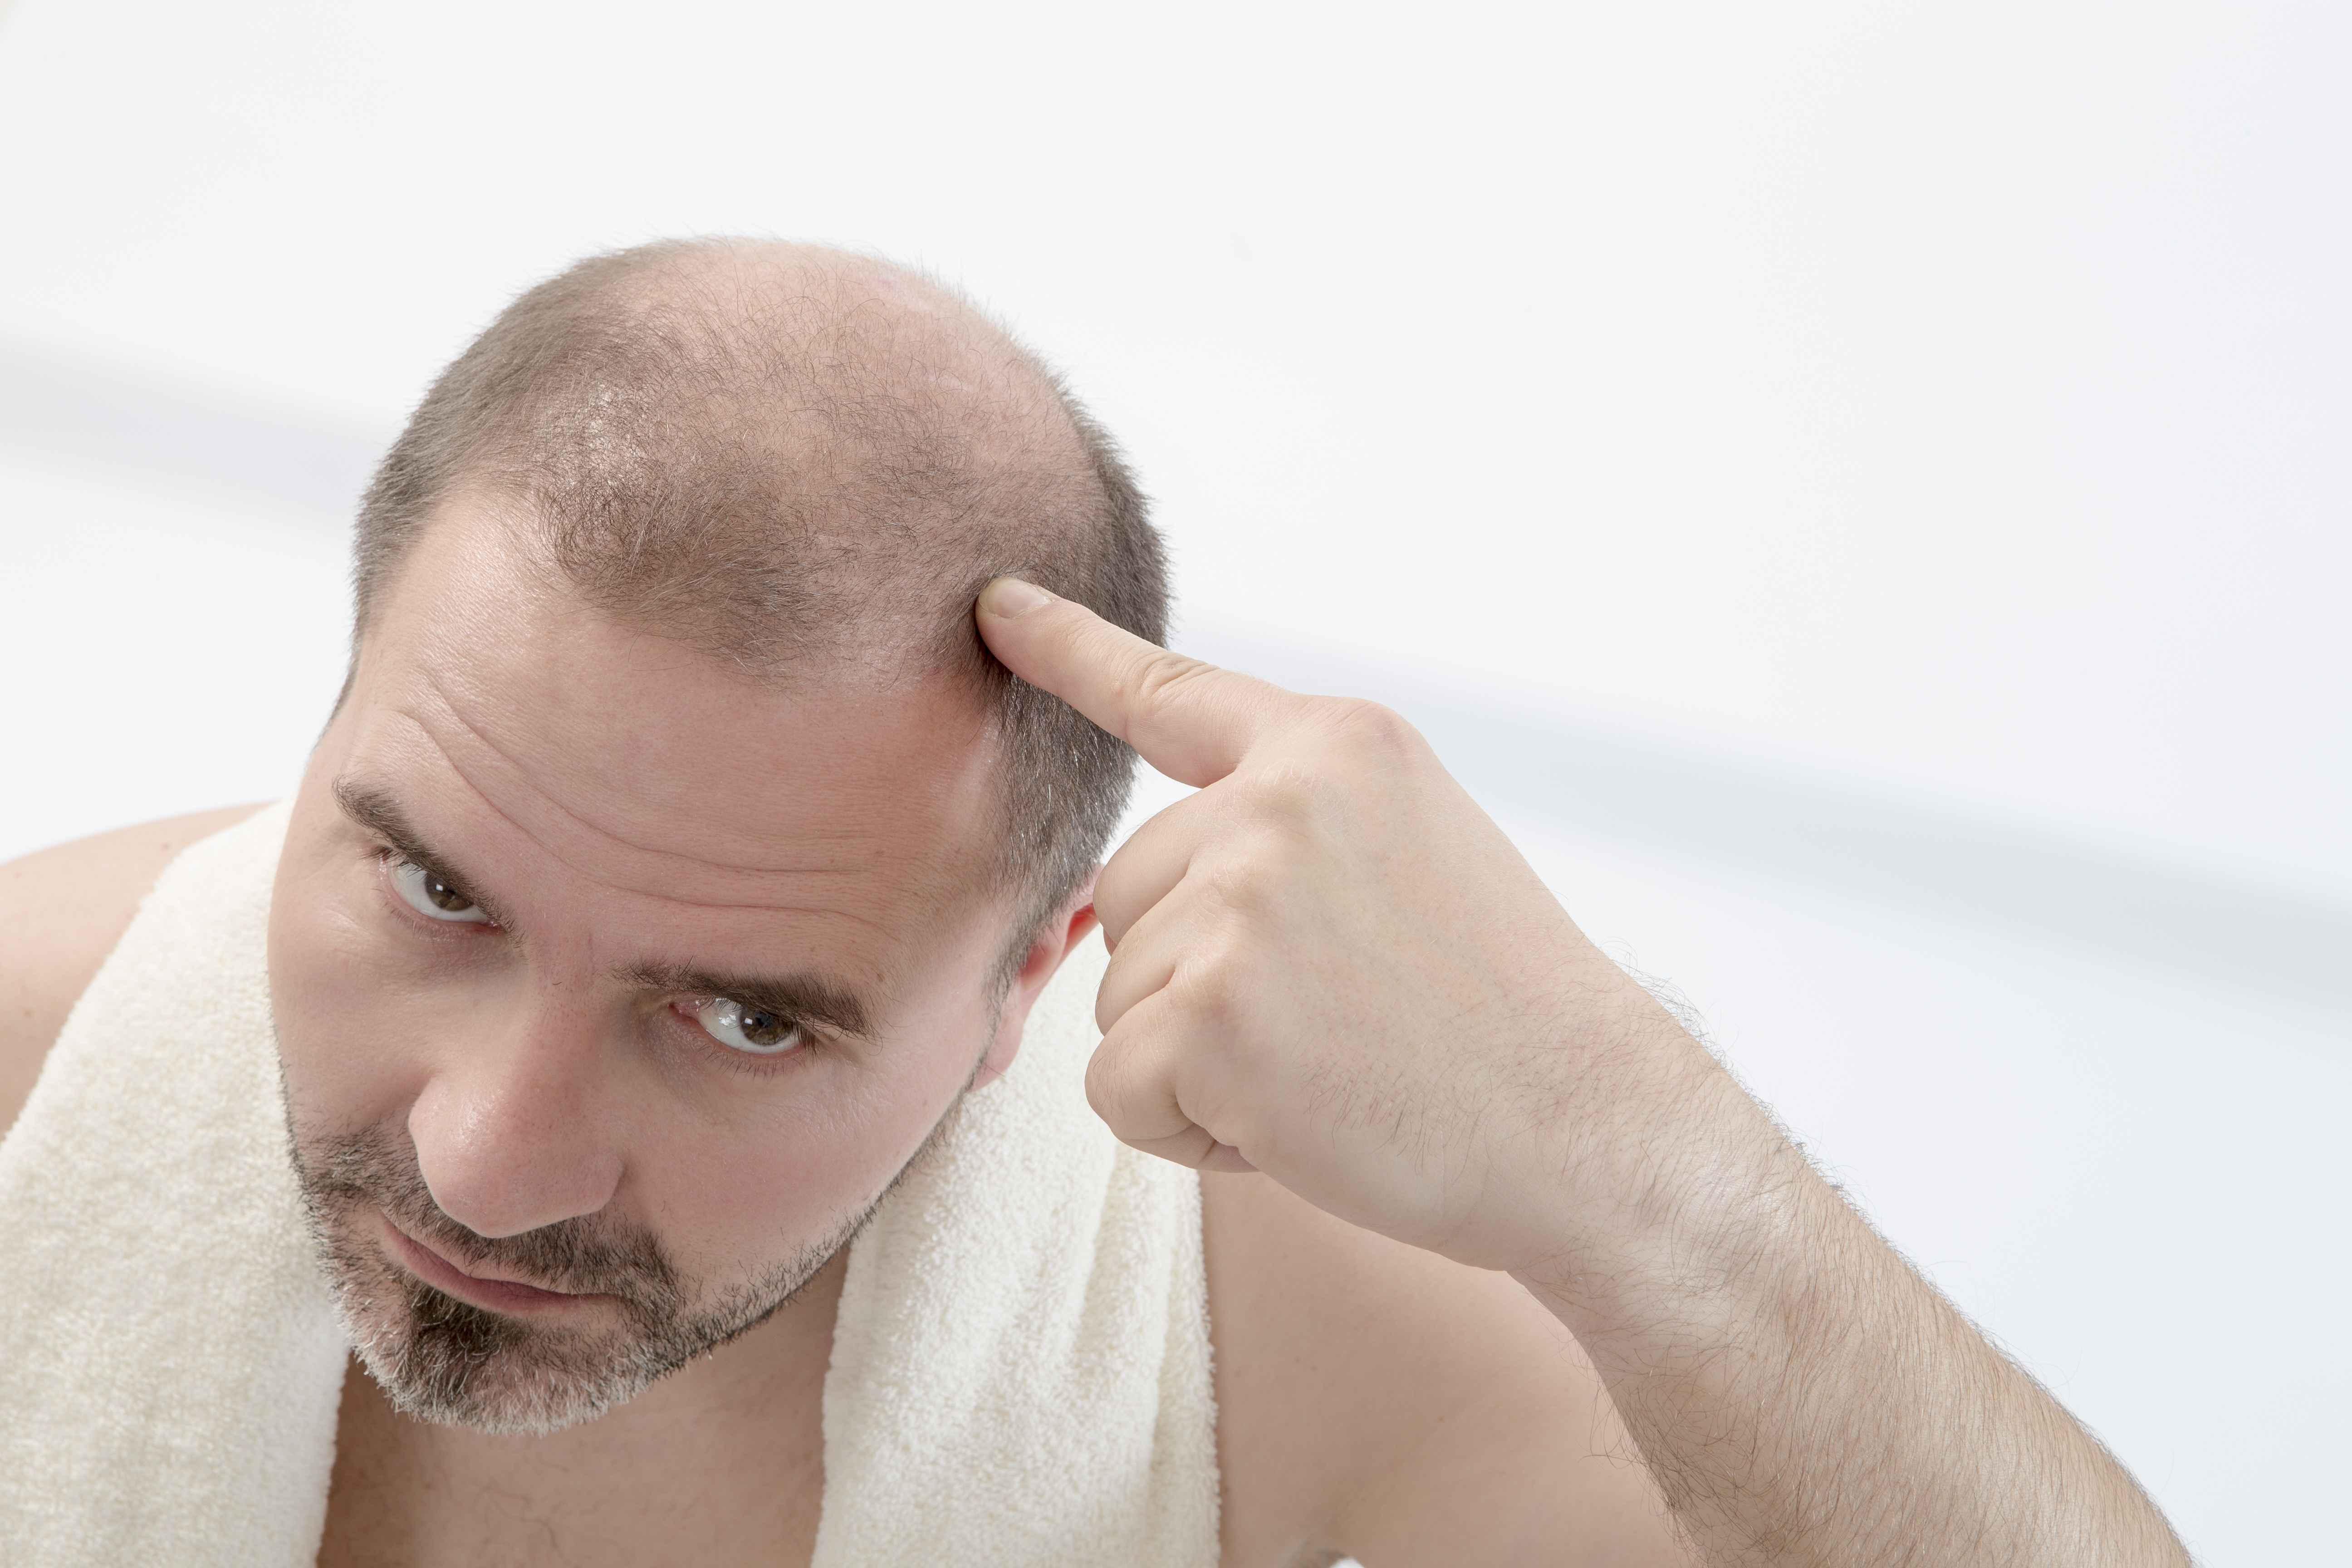 科普：脱发怎么办？严重脱发、发际线后移如何对症治疗？植发效果如何？ - 知乎